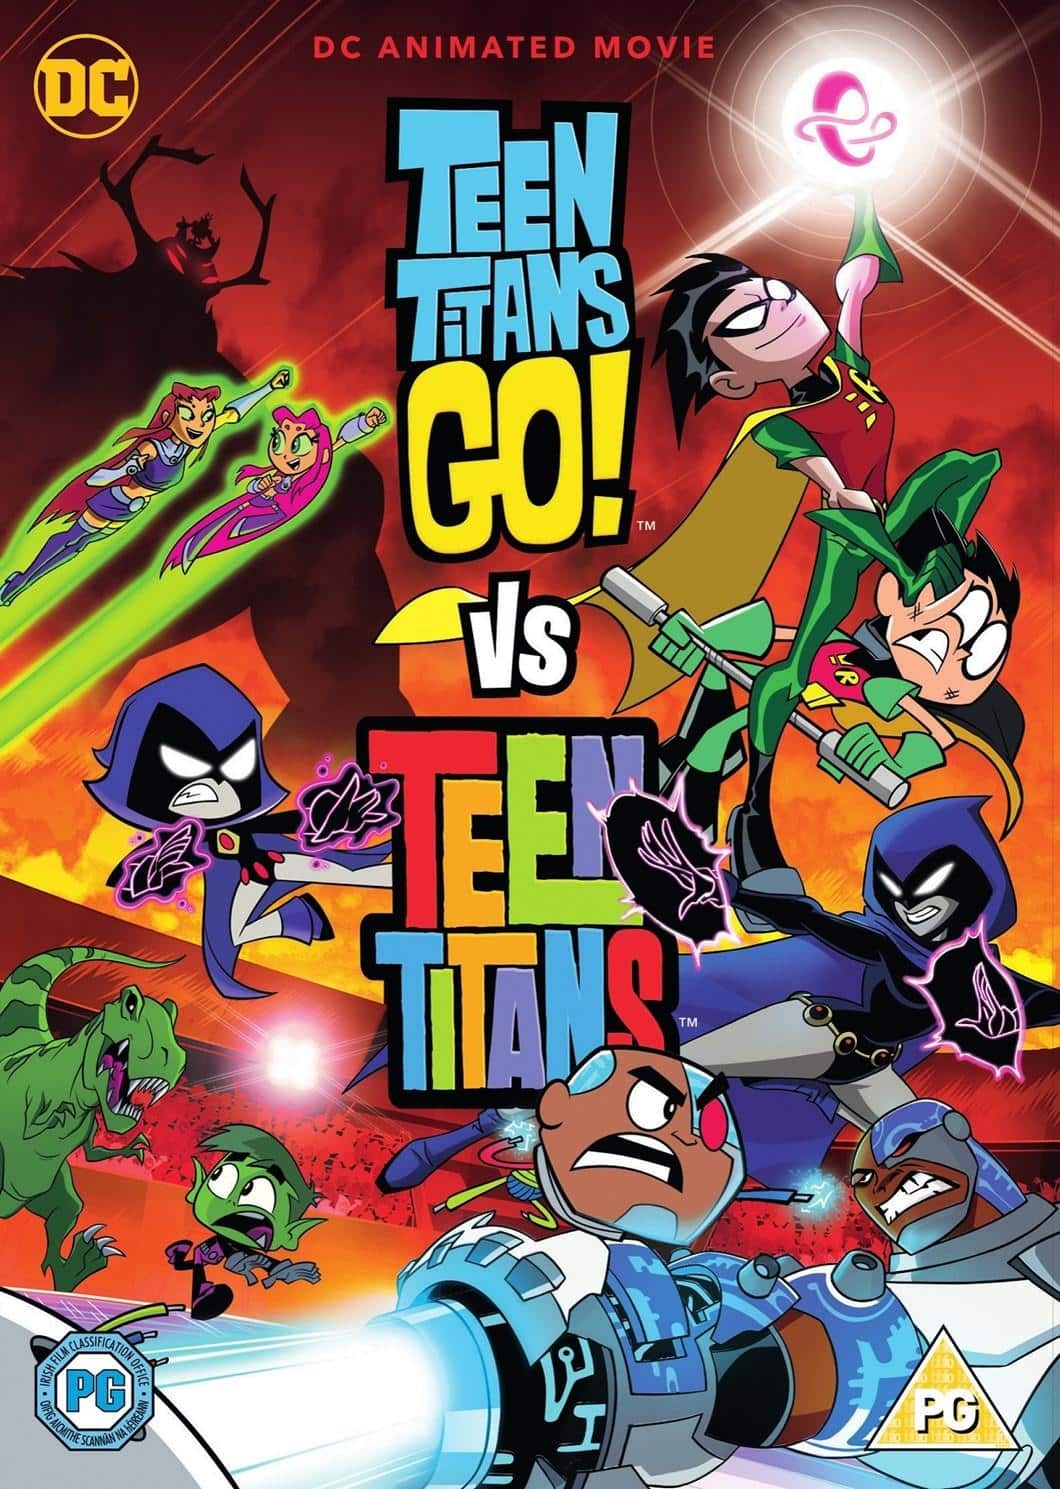 Teen Titans Go vs Teen Titans